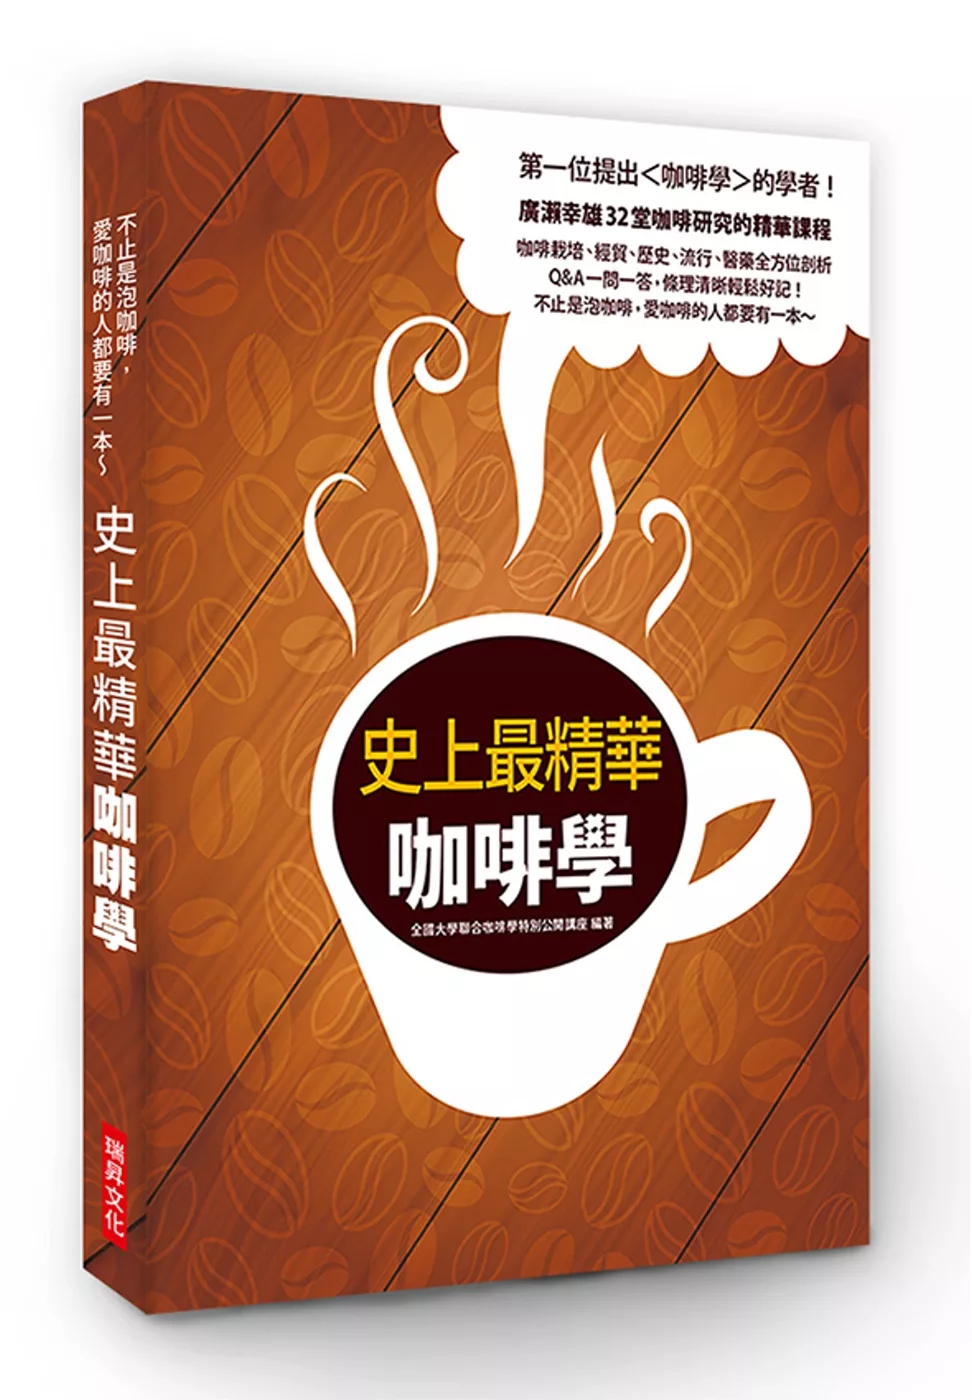 史上最精華咖啡學：第一位提出＜咖啡學＞的學者！廣瀨幸雄32堂咖啡研究的精華課程，咖啡栽培、 經貿、 歷史、 流行、 醫藥全方位剖析